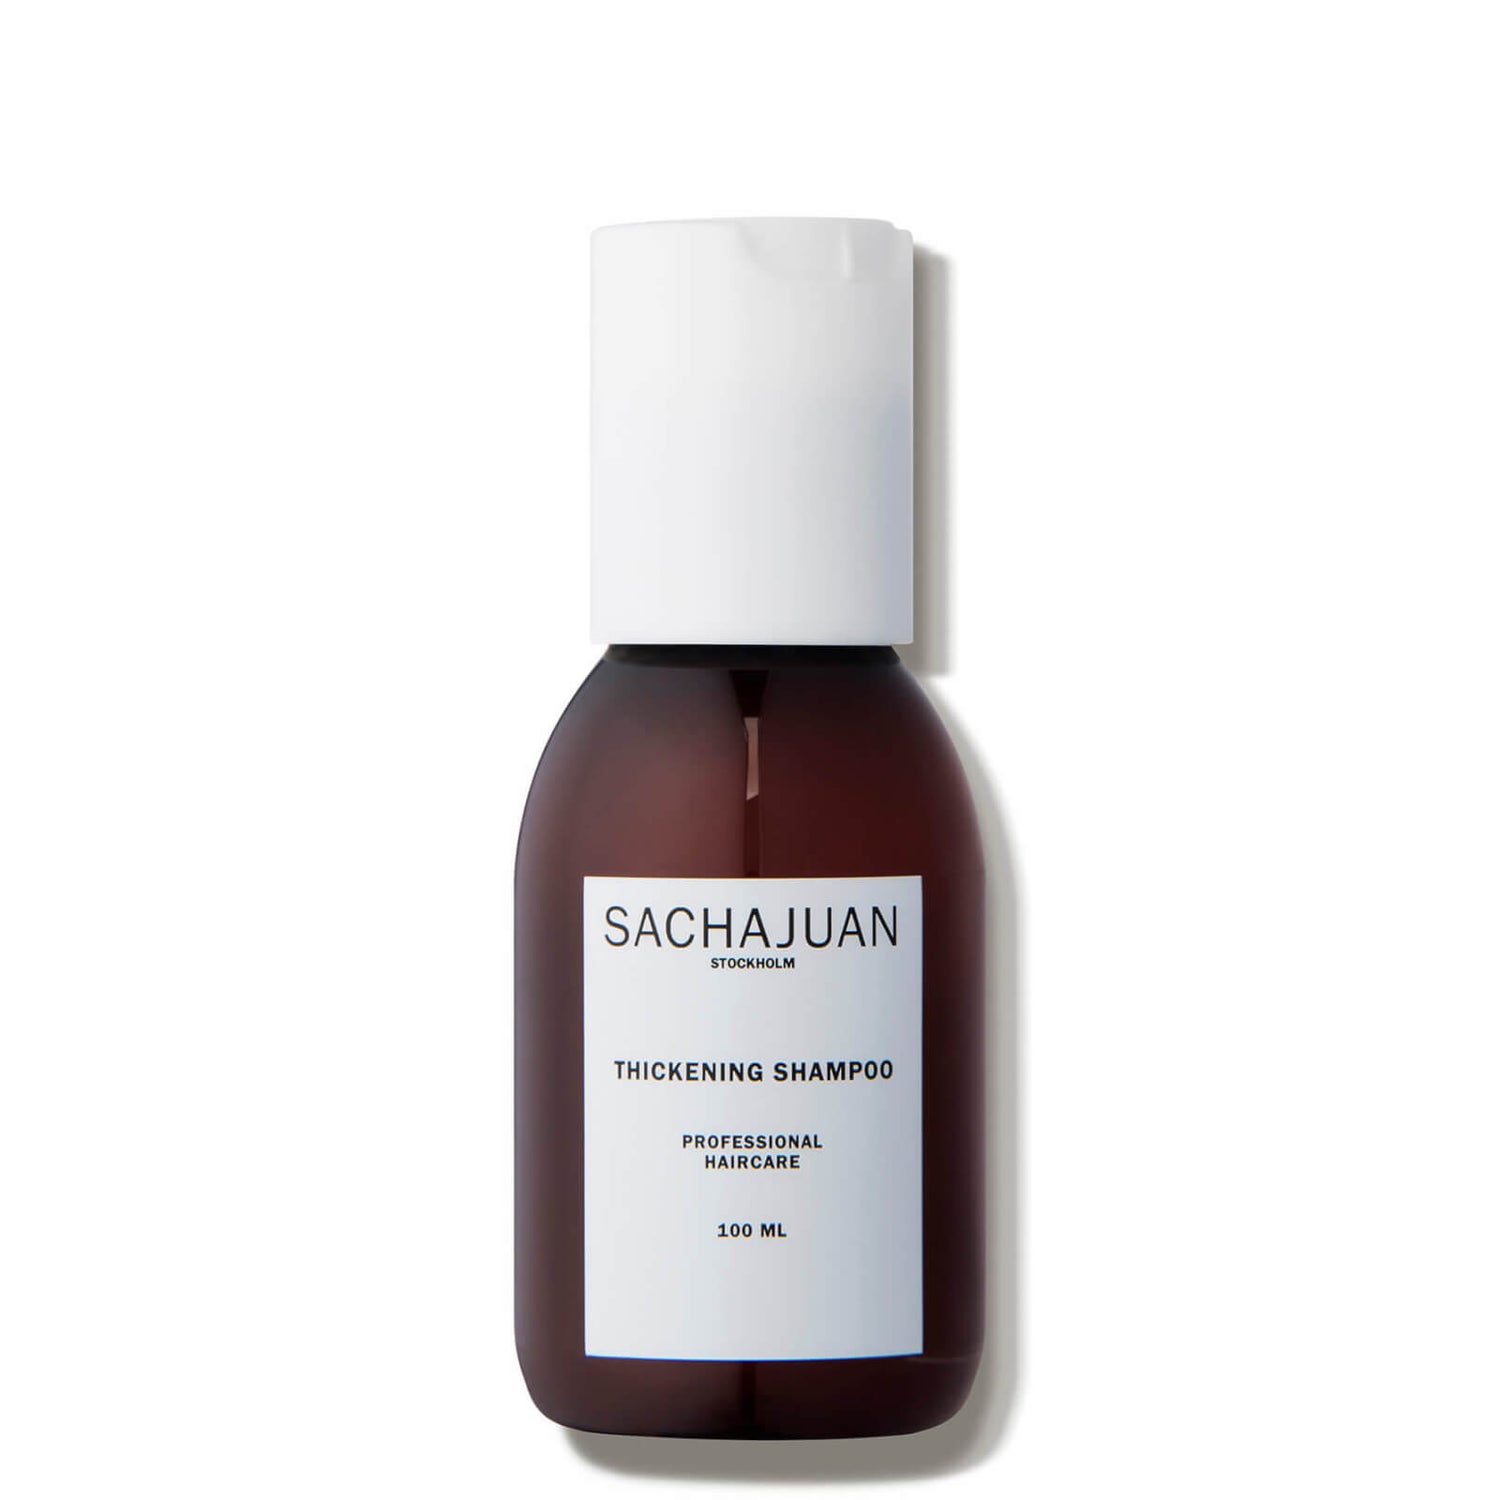 Sachajuan Thickening Shampoo (3.4 fl. oz.)